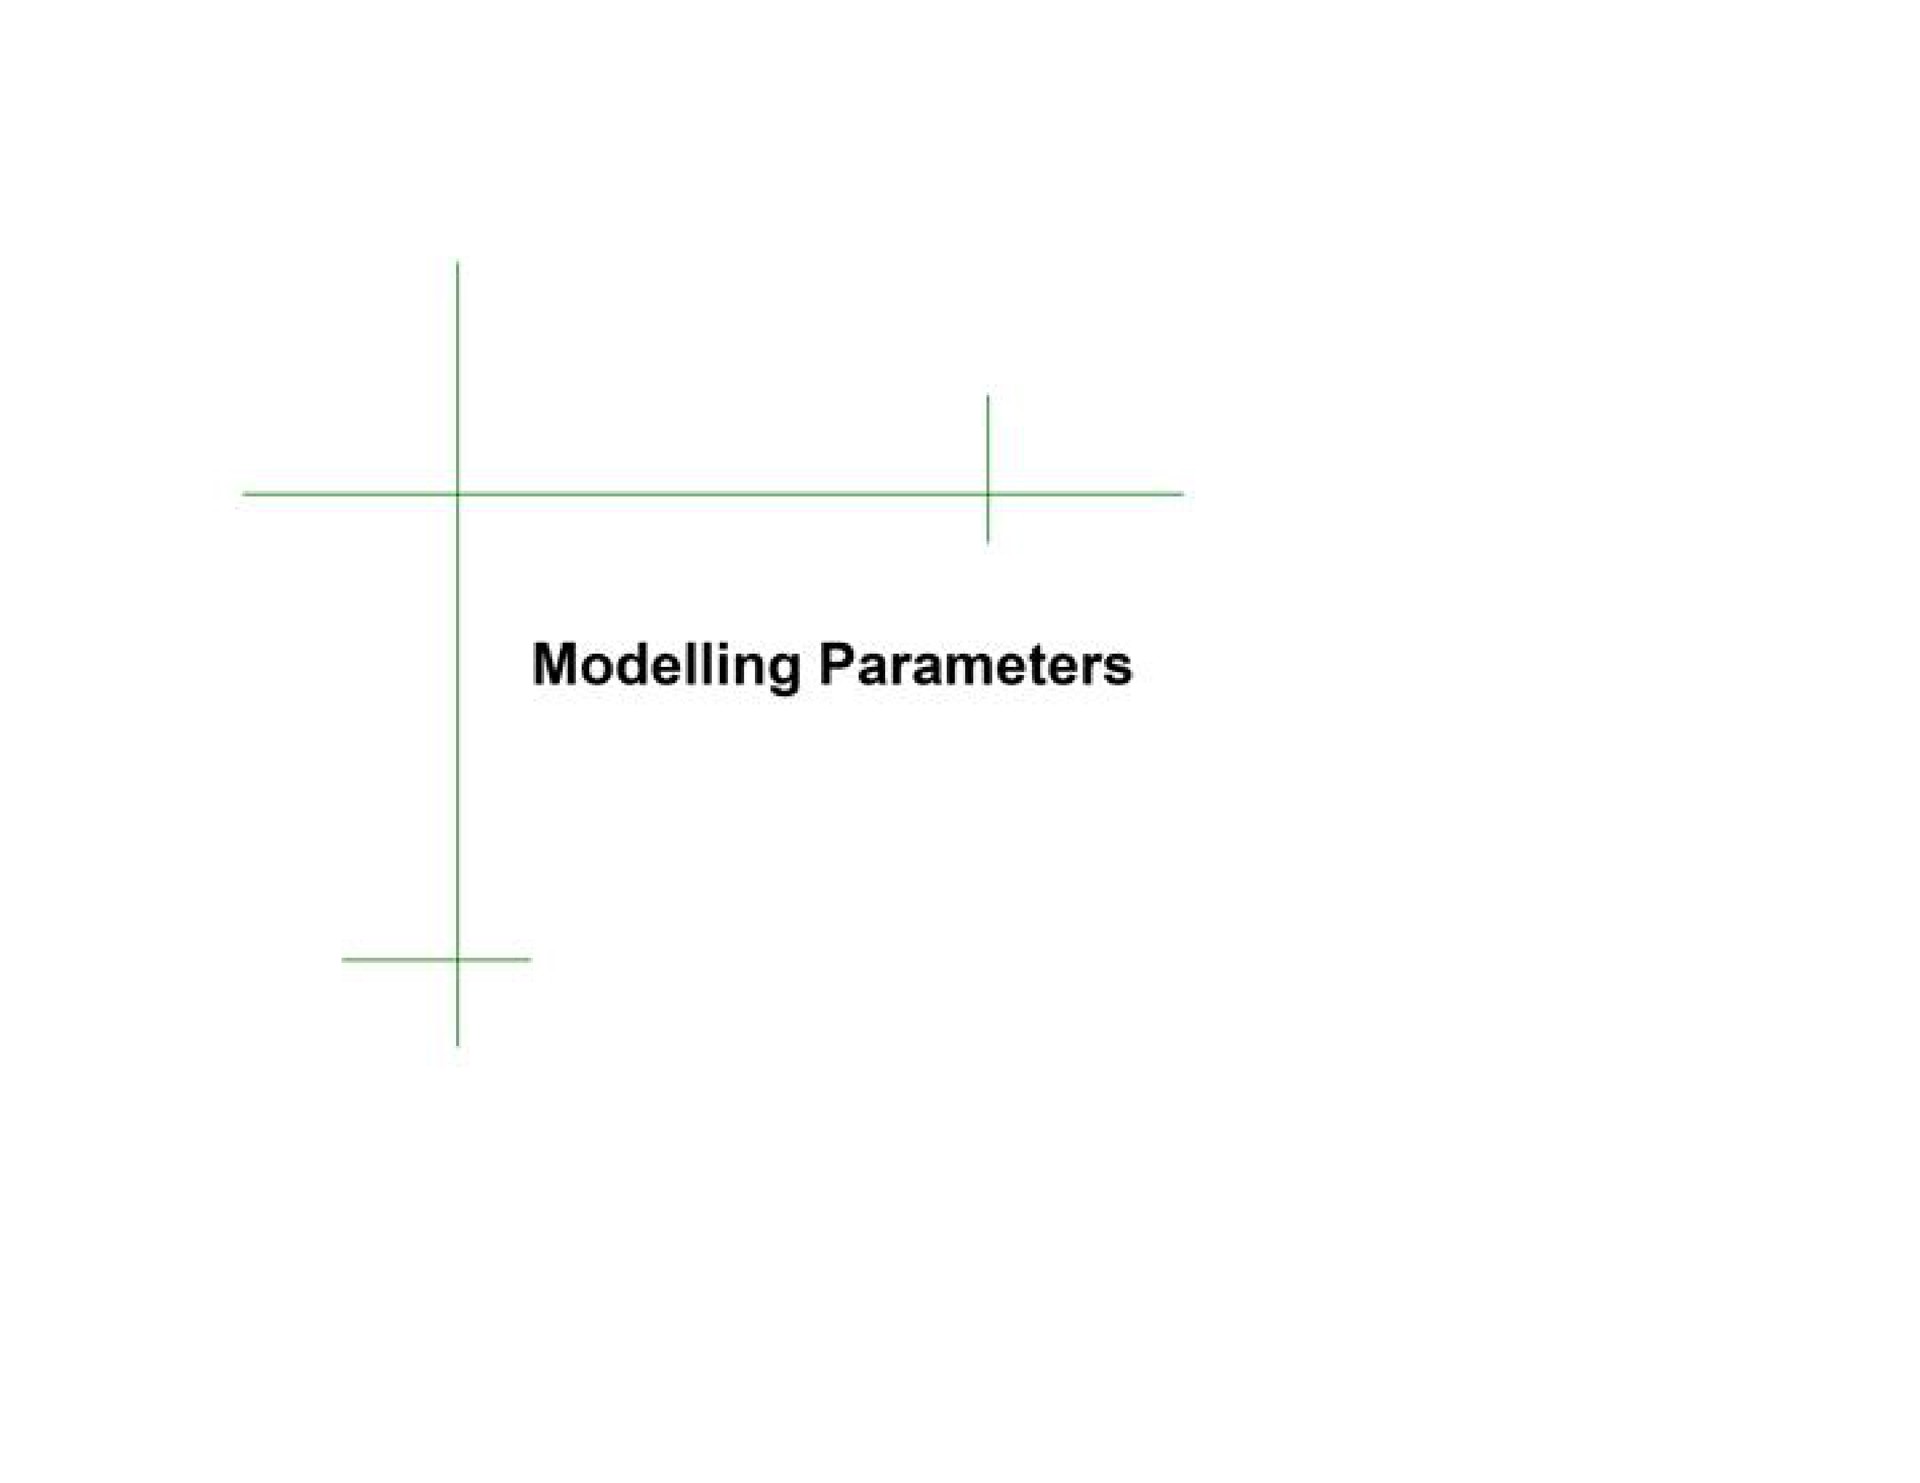 modelling parameters | TD Securities